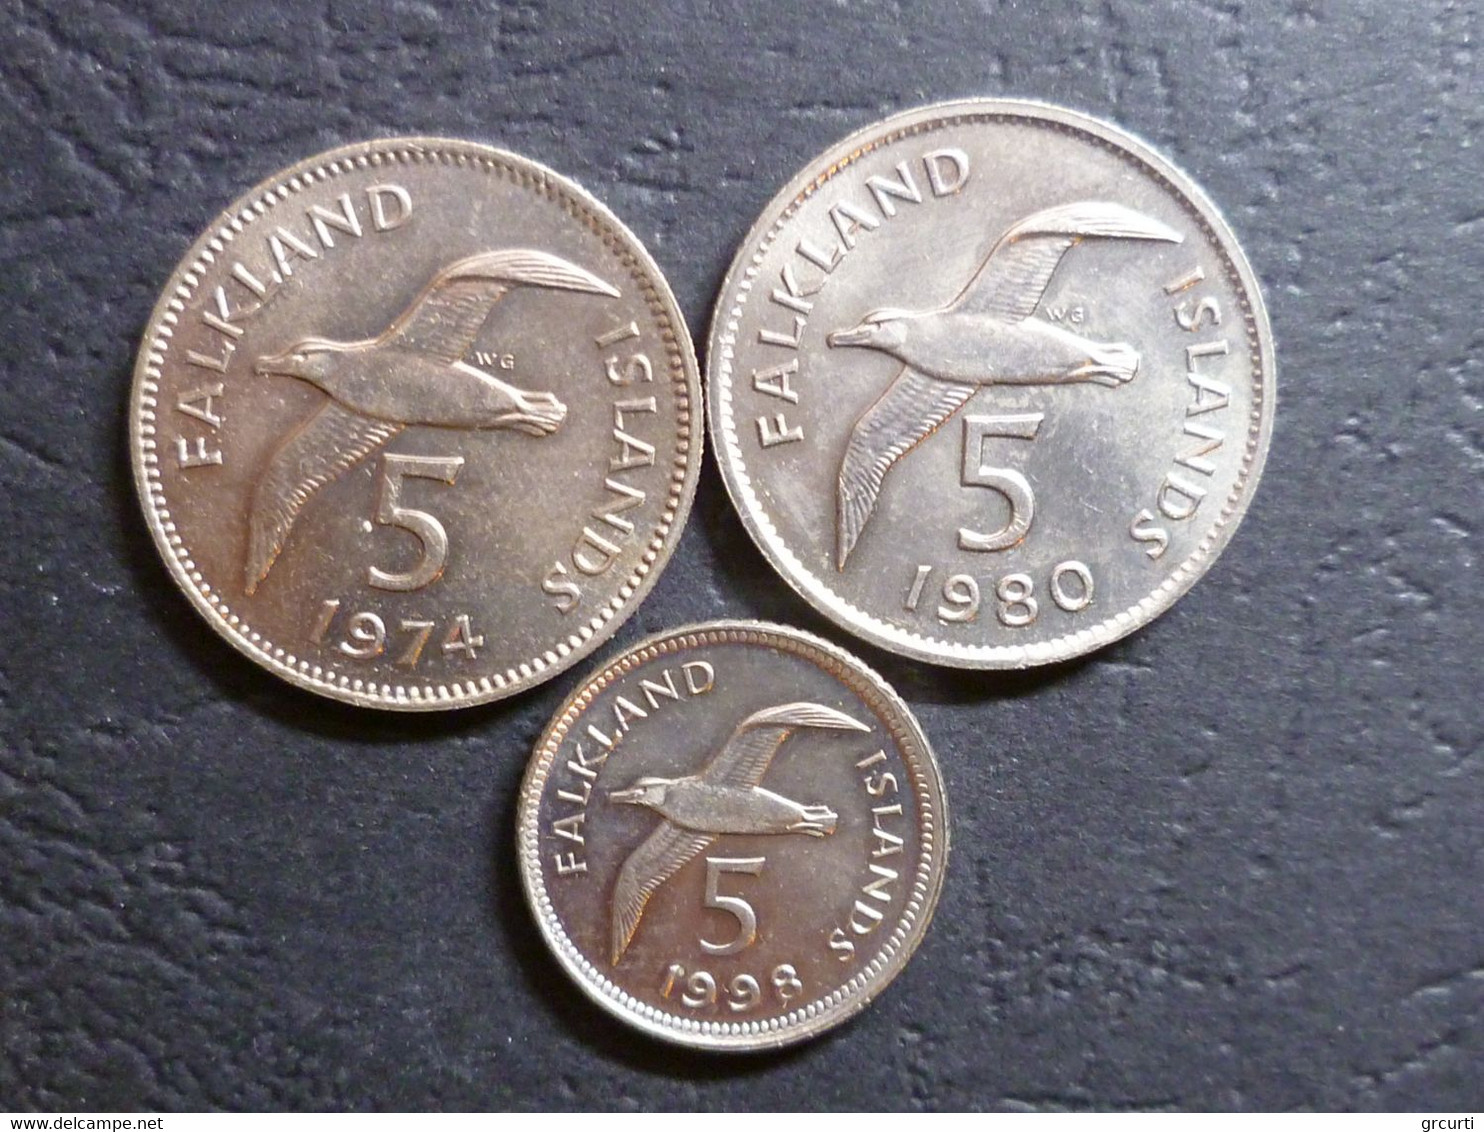 Falkland - Lotto di 26 monete differenti